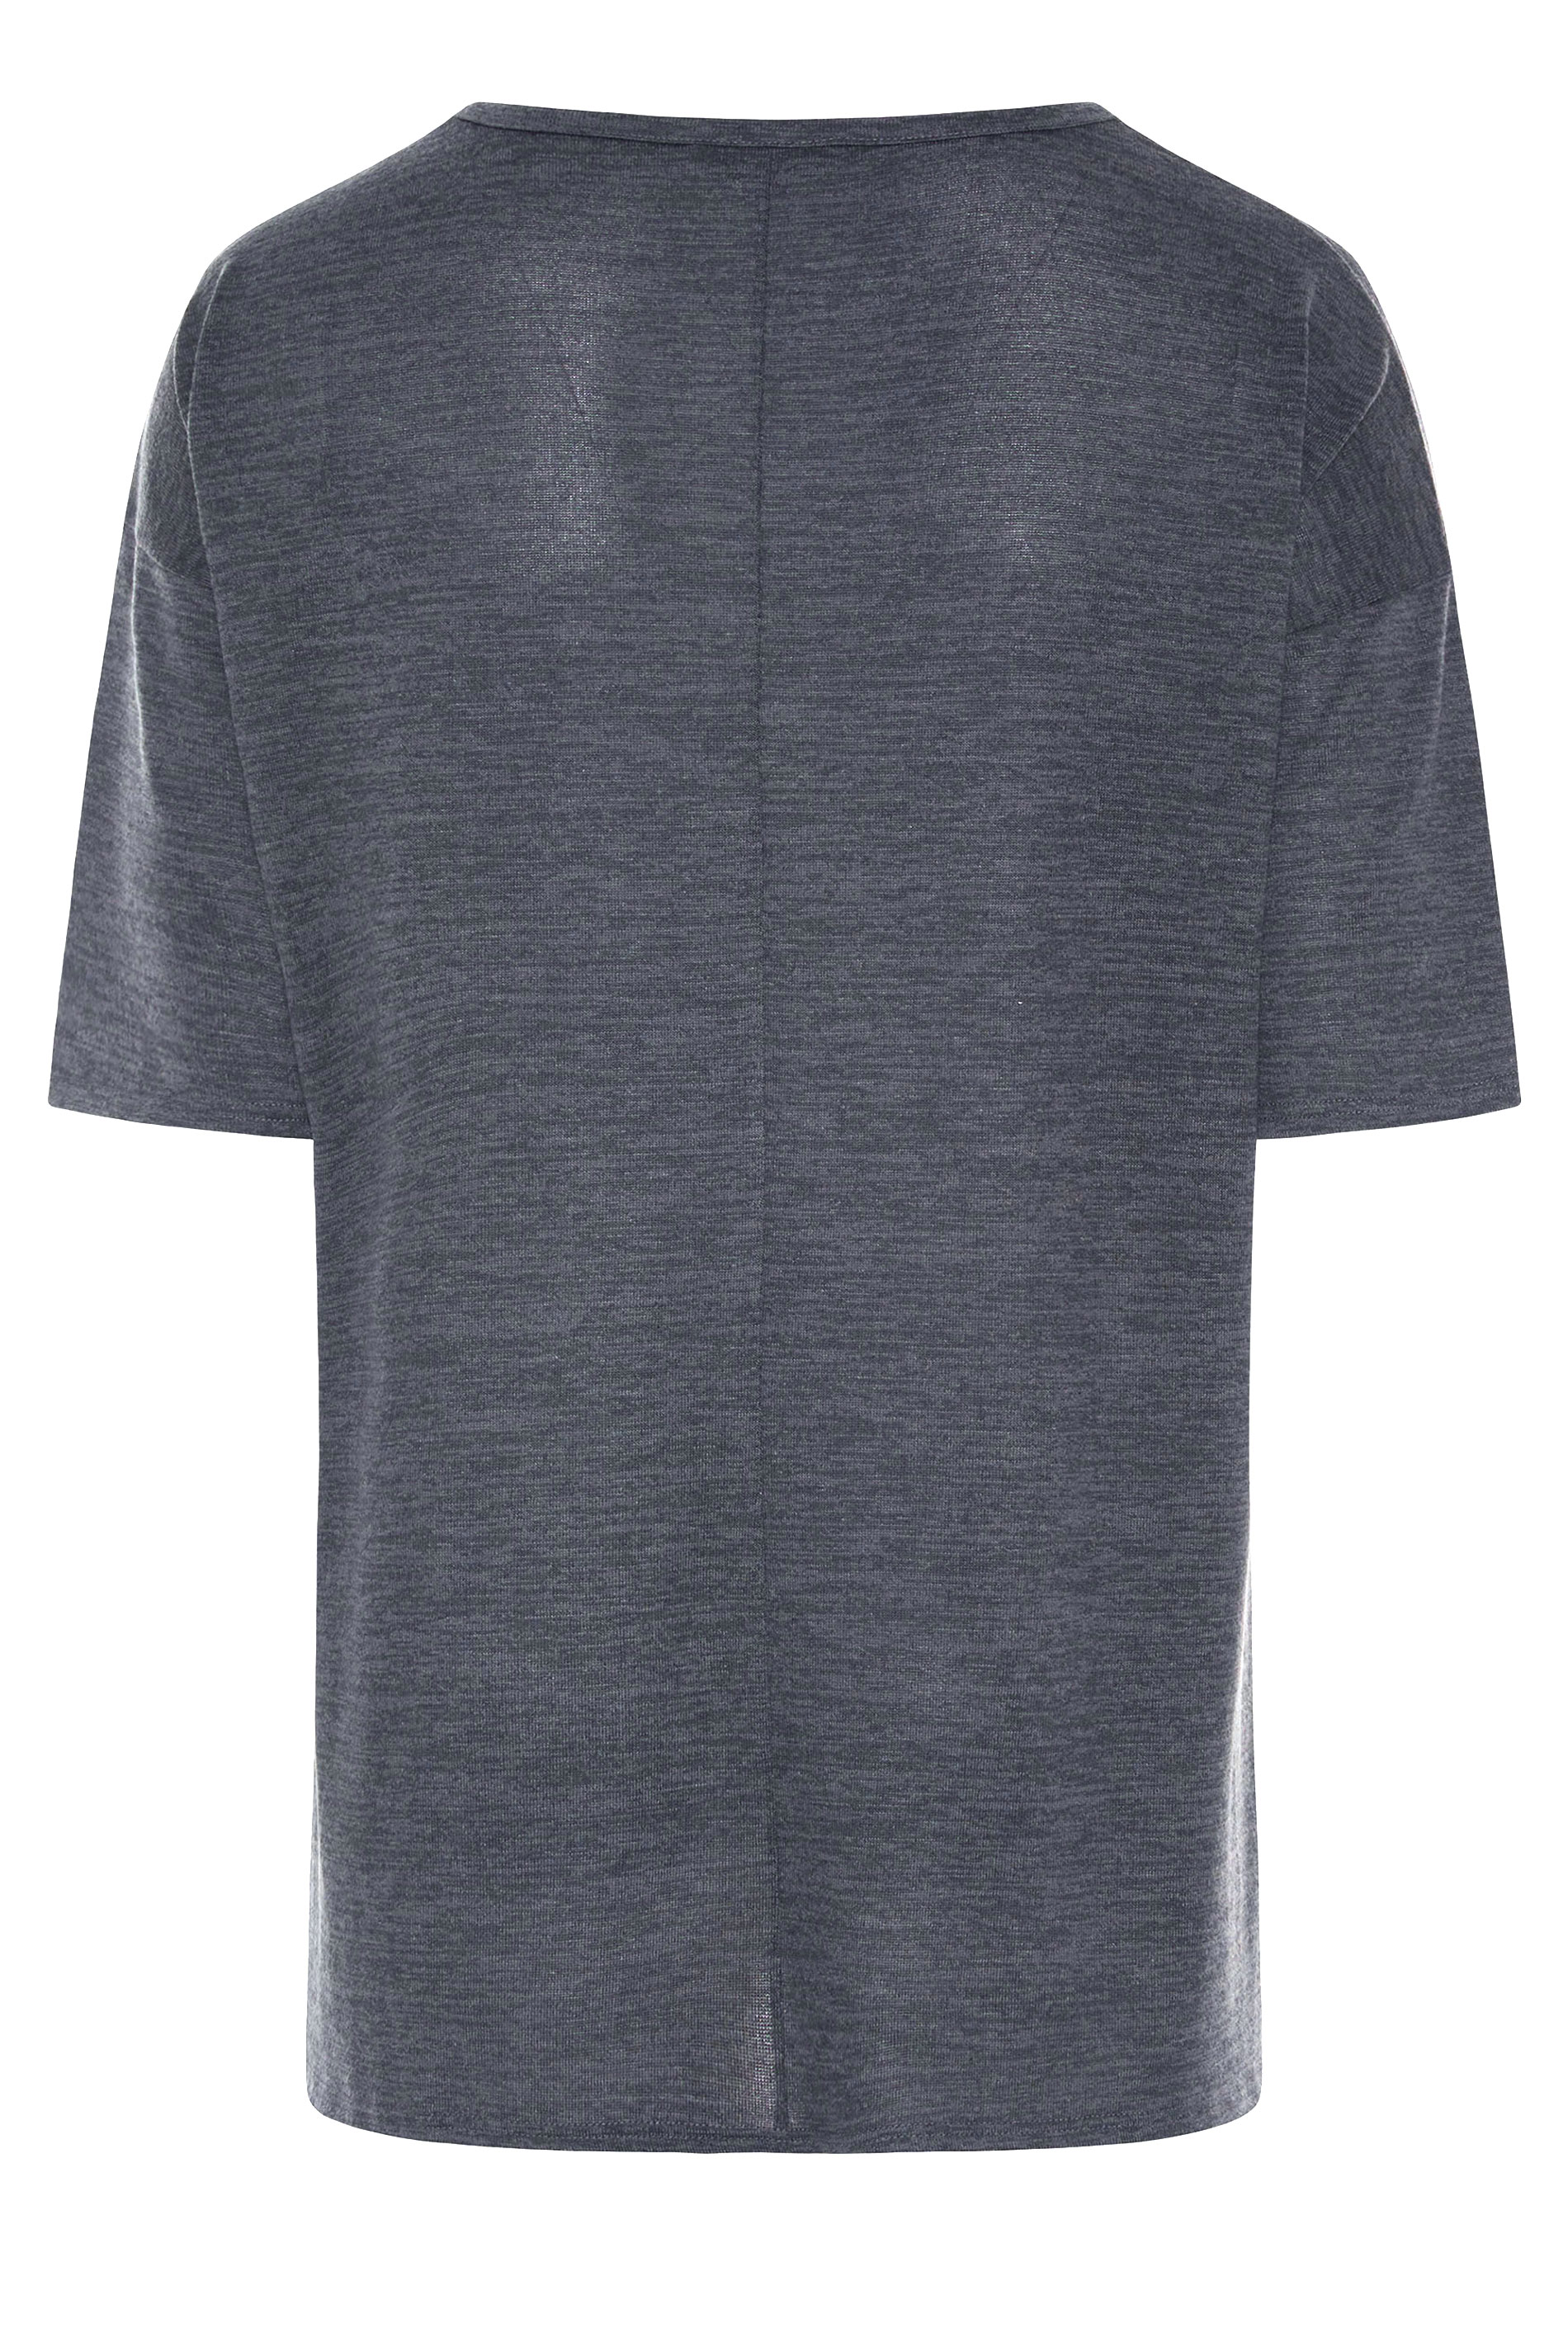 Grande taille  Tops Grande taille  T-Shirts Basiques & Débardeurs | T-Shirt Gris Style Oversize - CI49726